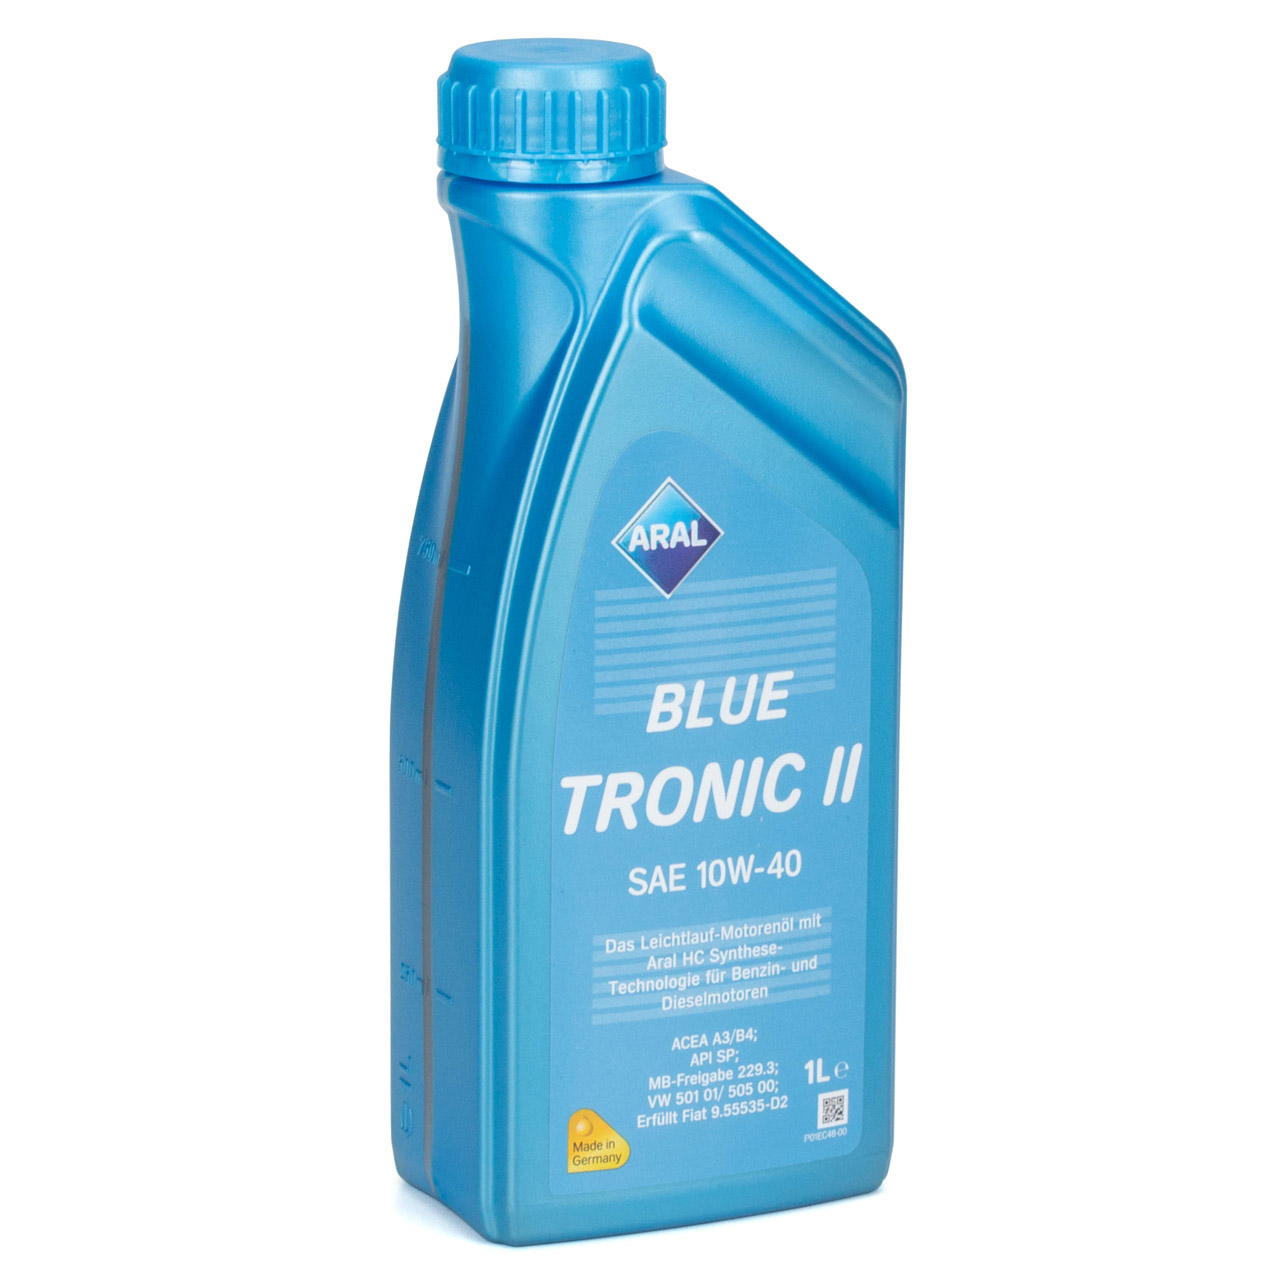 7L 7 Liter ARAL BLUE TRONIC II 10W-40 Motoröl Öl MB 229.3 VW 501.01/505.00 FIAT 9.55535-D2